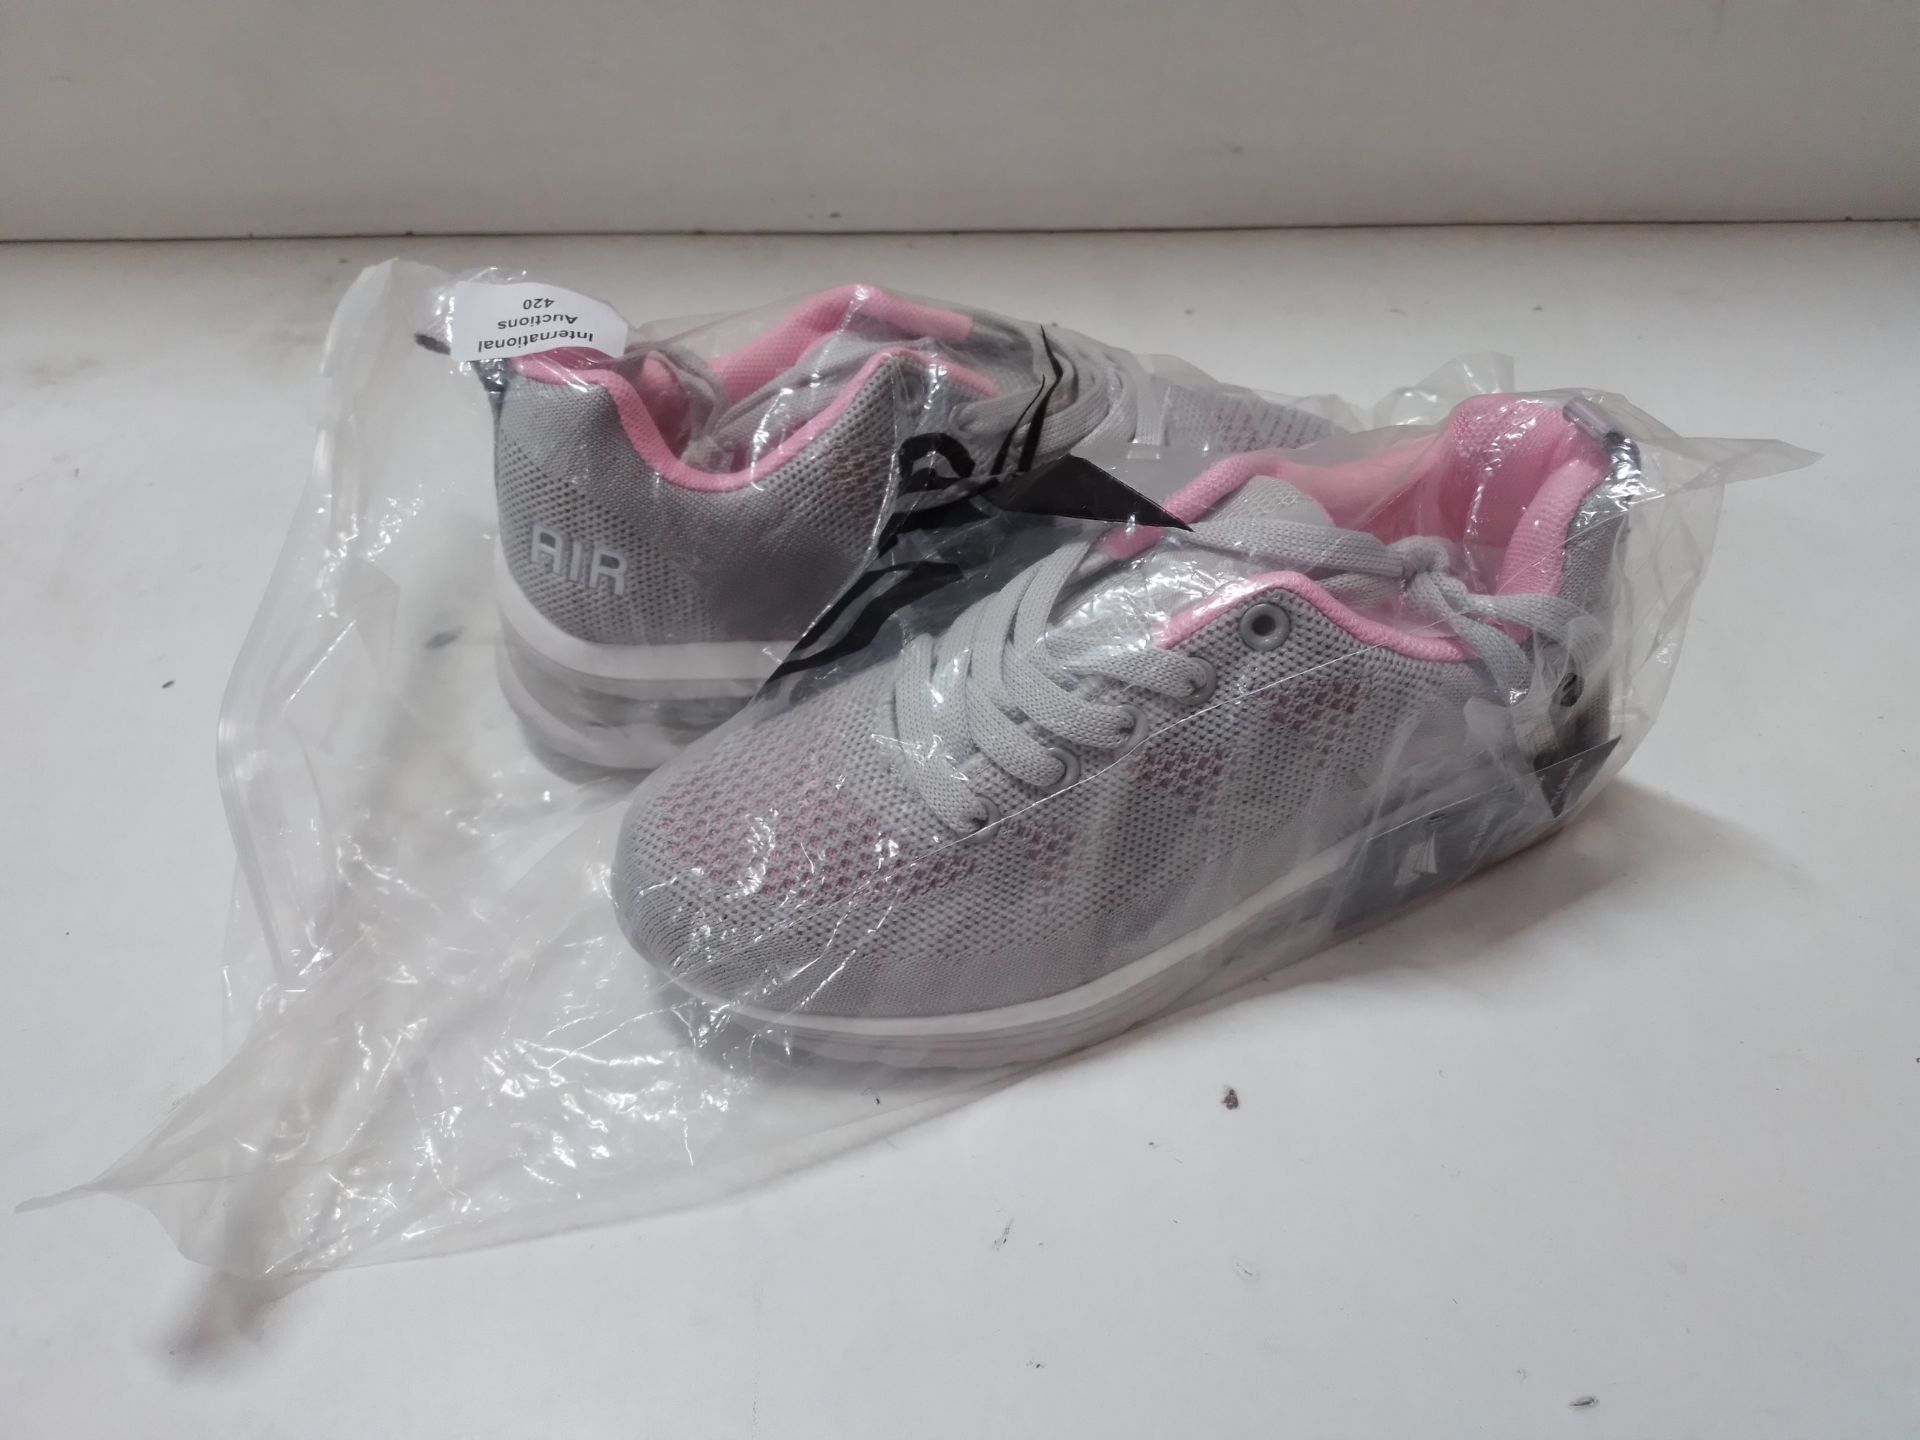 RRP £26.64 BUBUDENG Women's Trainers Air Cushion Sneakers Walking - Image 2 of 2